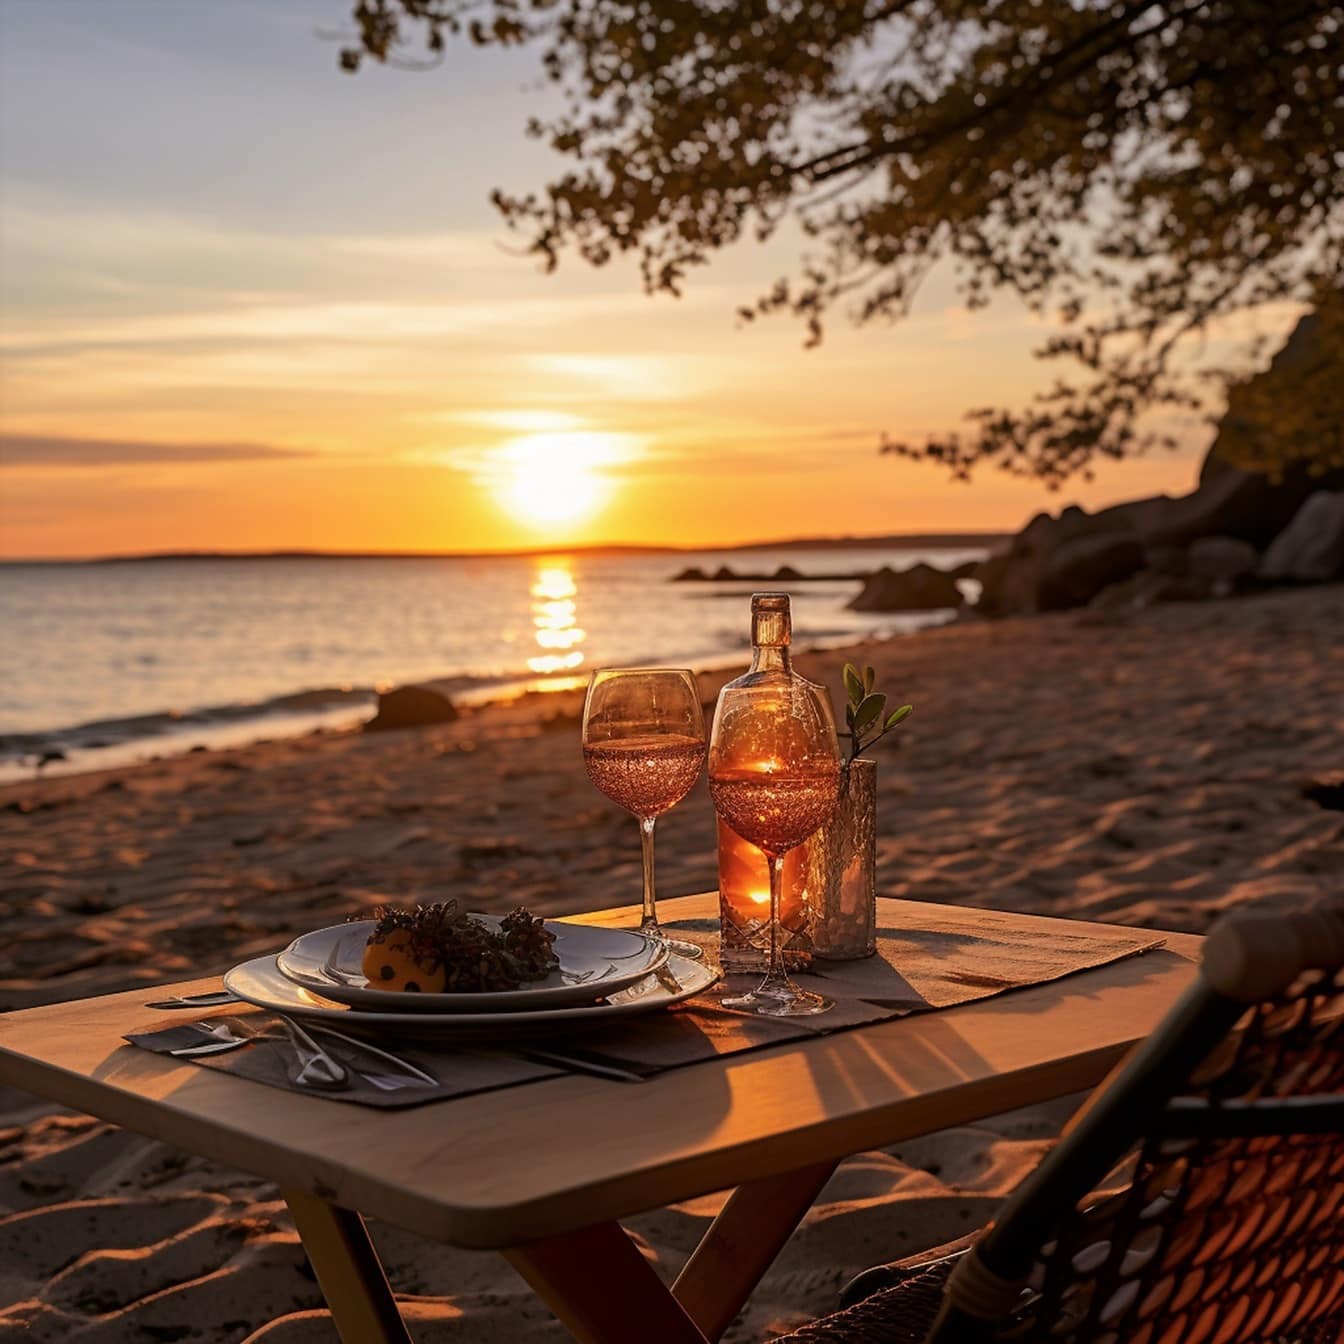 Romantisk middagsbord med hvitvin ved stranden i solnedgang